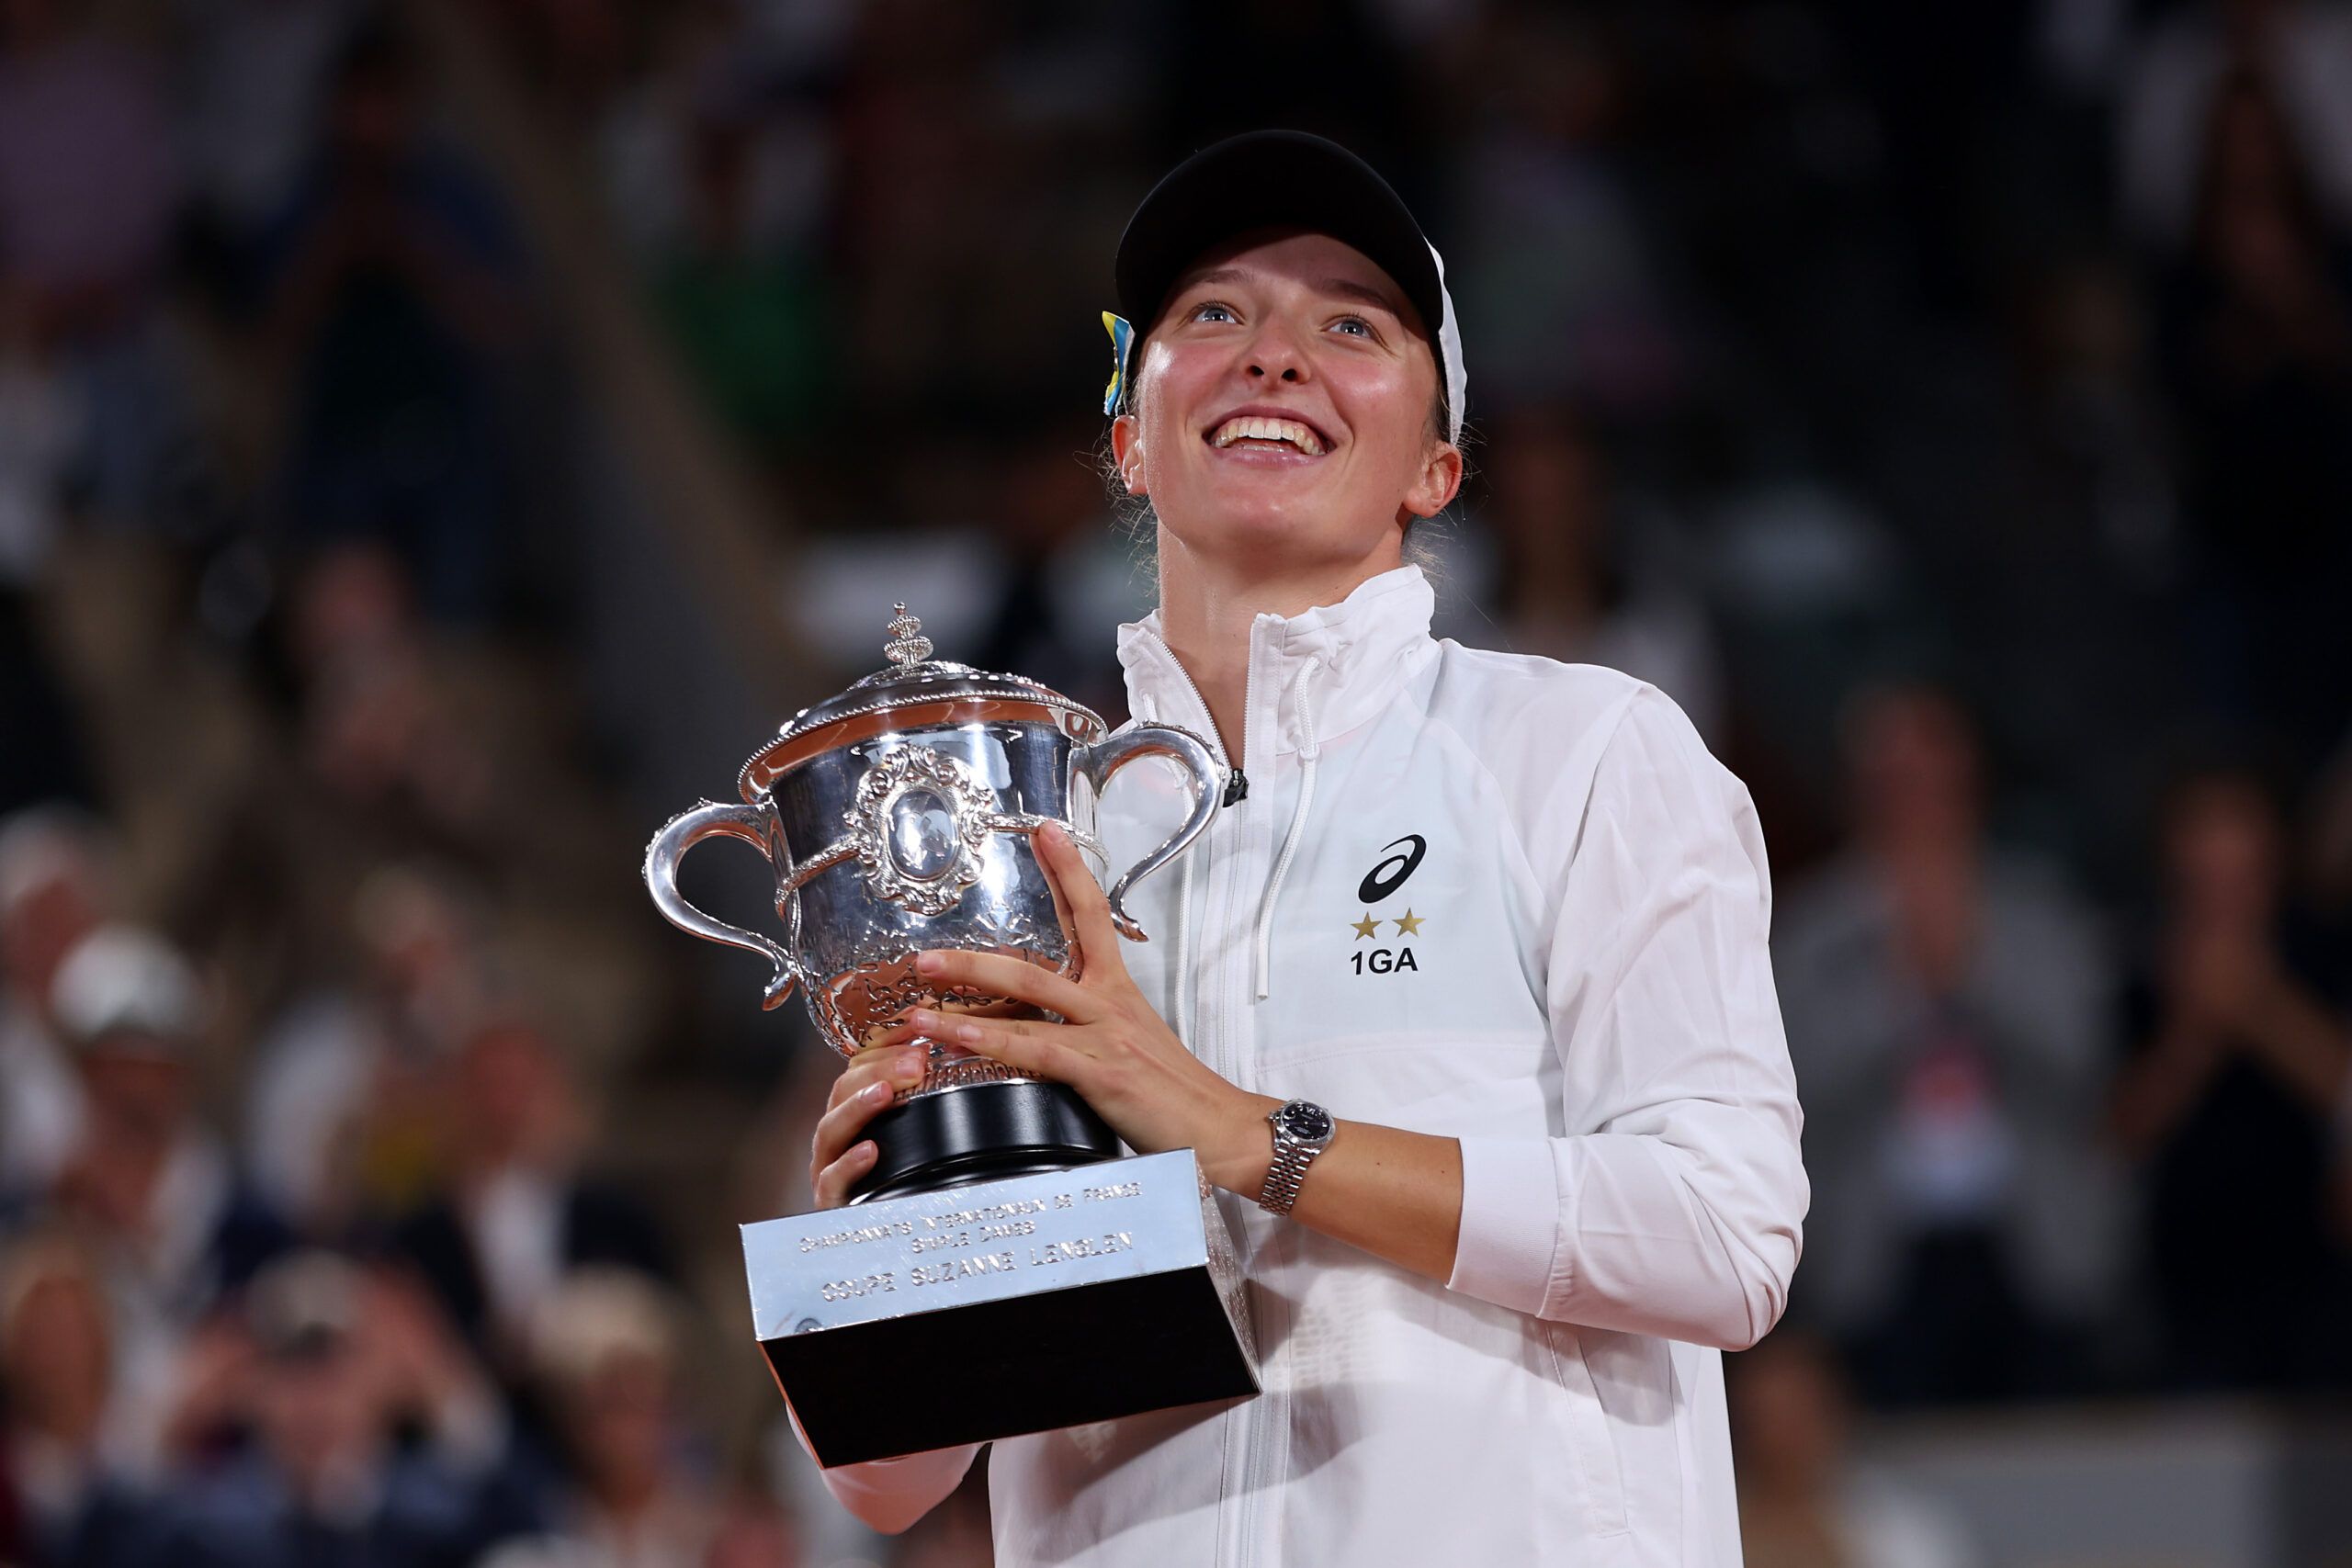 Iga Świątek wins the French Open